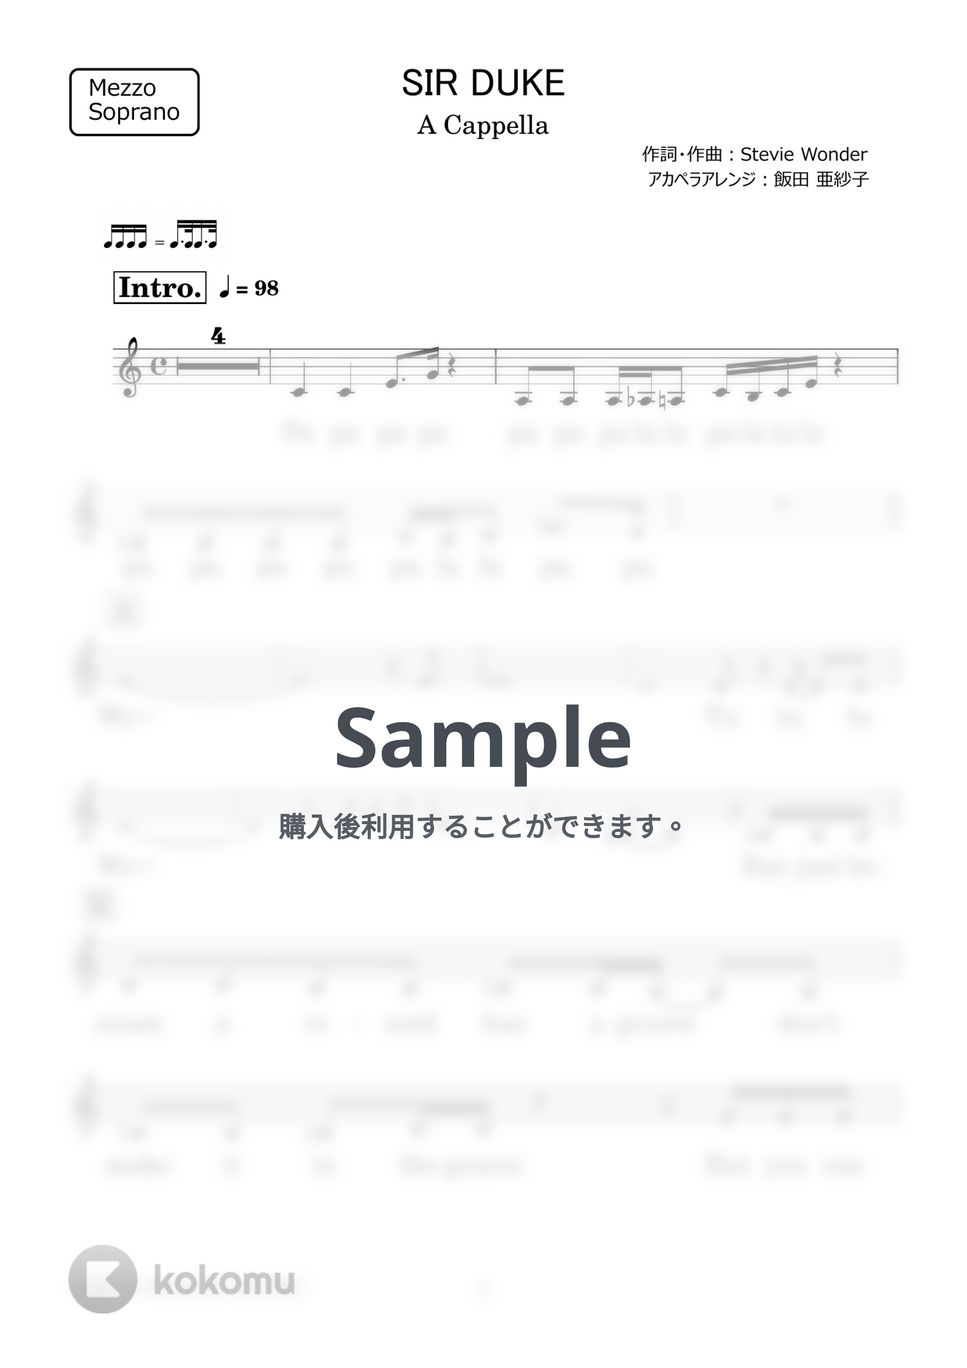 Stevie Wonder - SIR DUKE (アカペラ楽譜♪MezzoSopranoパート譜) by 飯田 亜紗子